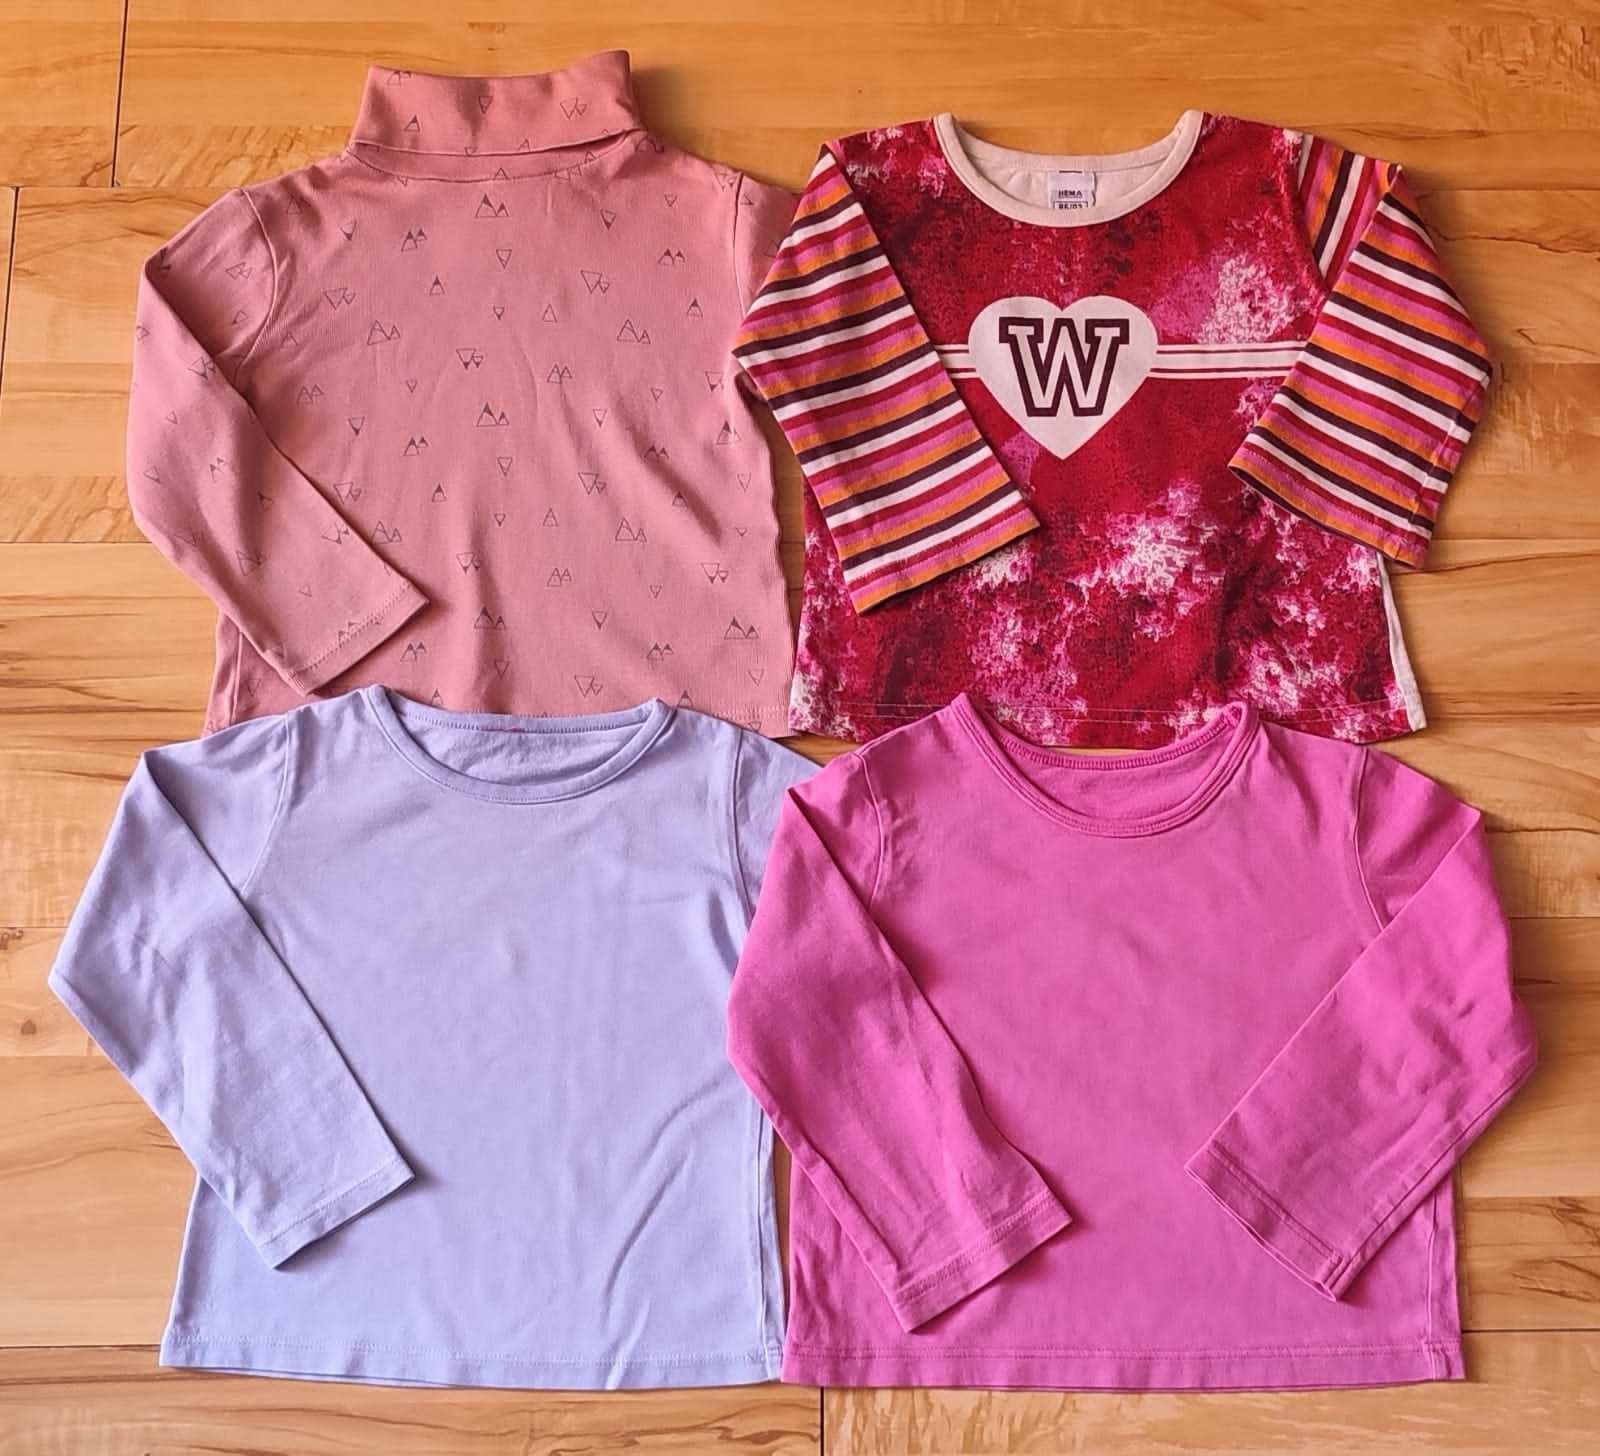 Пакет одежды для девочки 1,5-2 года, р. 86-92 набор вещей